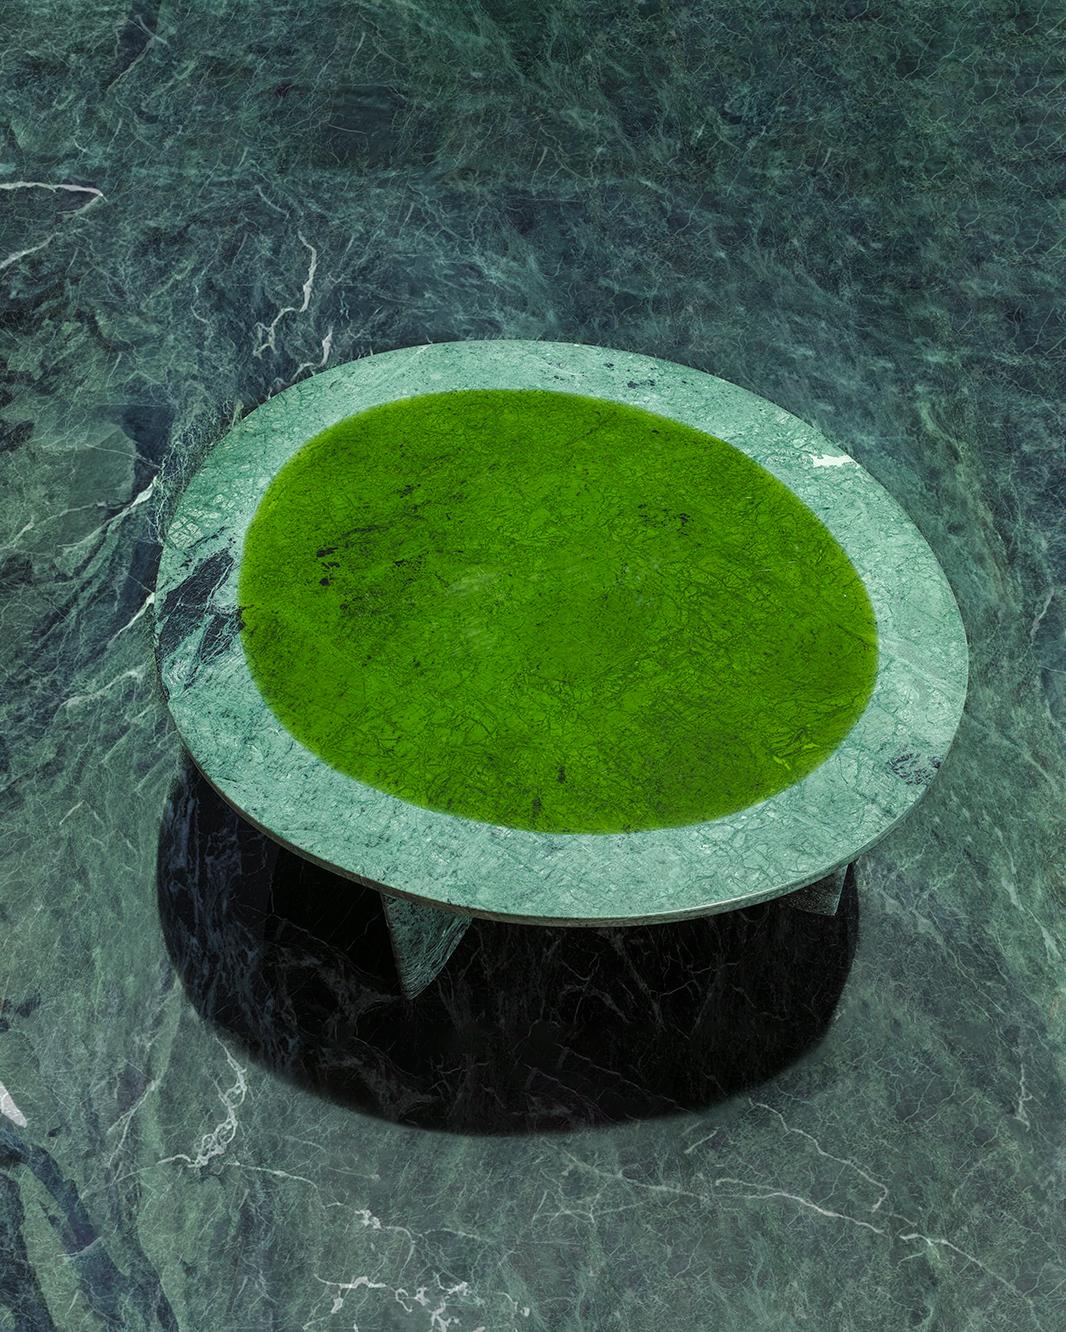 Table basse vert minéraux de Carla Baz
Entièrement réalisée à la main en marbre massif avec incrustation de résine.
Dimensions : L 136 x L 75 x H 35/45 CM
Poids : 65 kg
Matériau : Marbre Brescia Viola, résine.
Également disponible dans d'autres